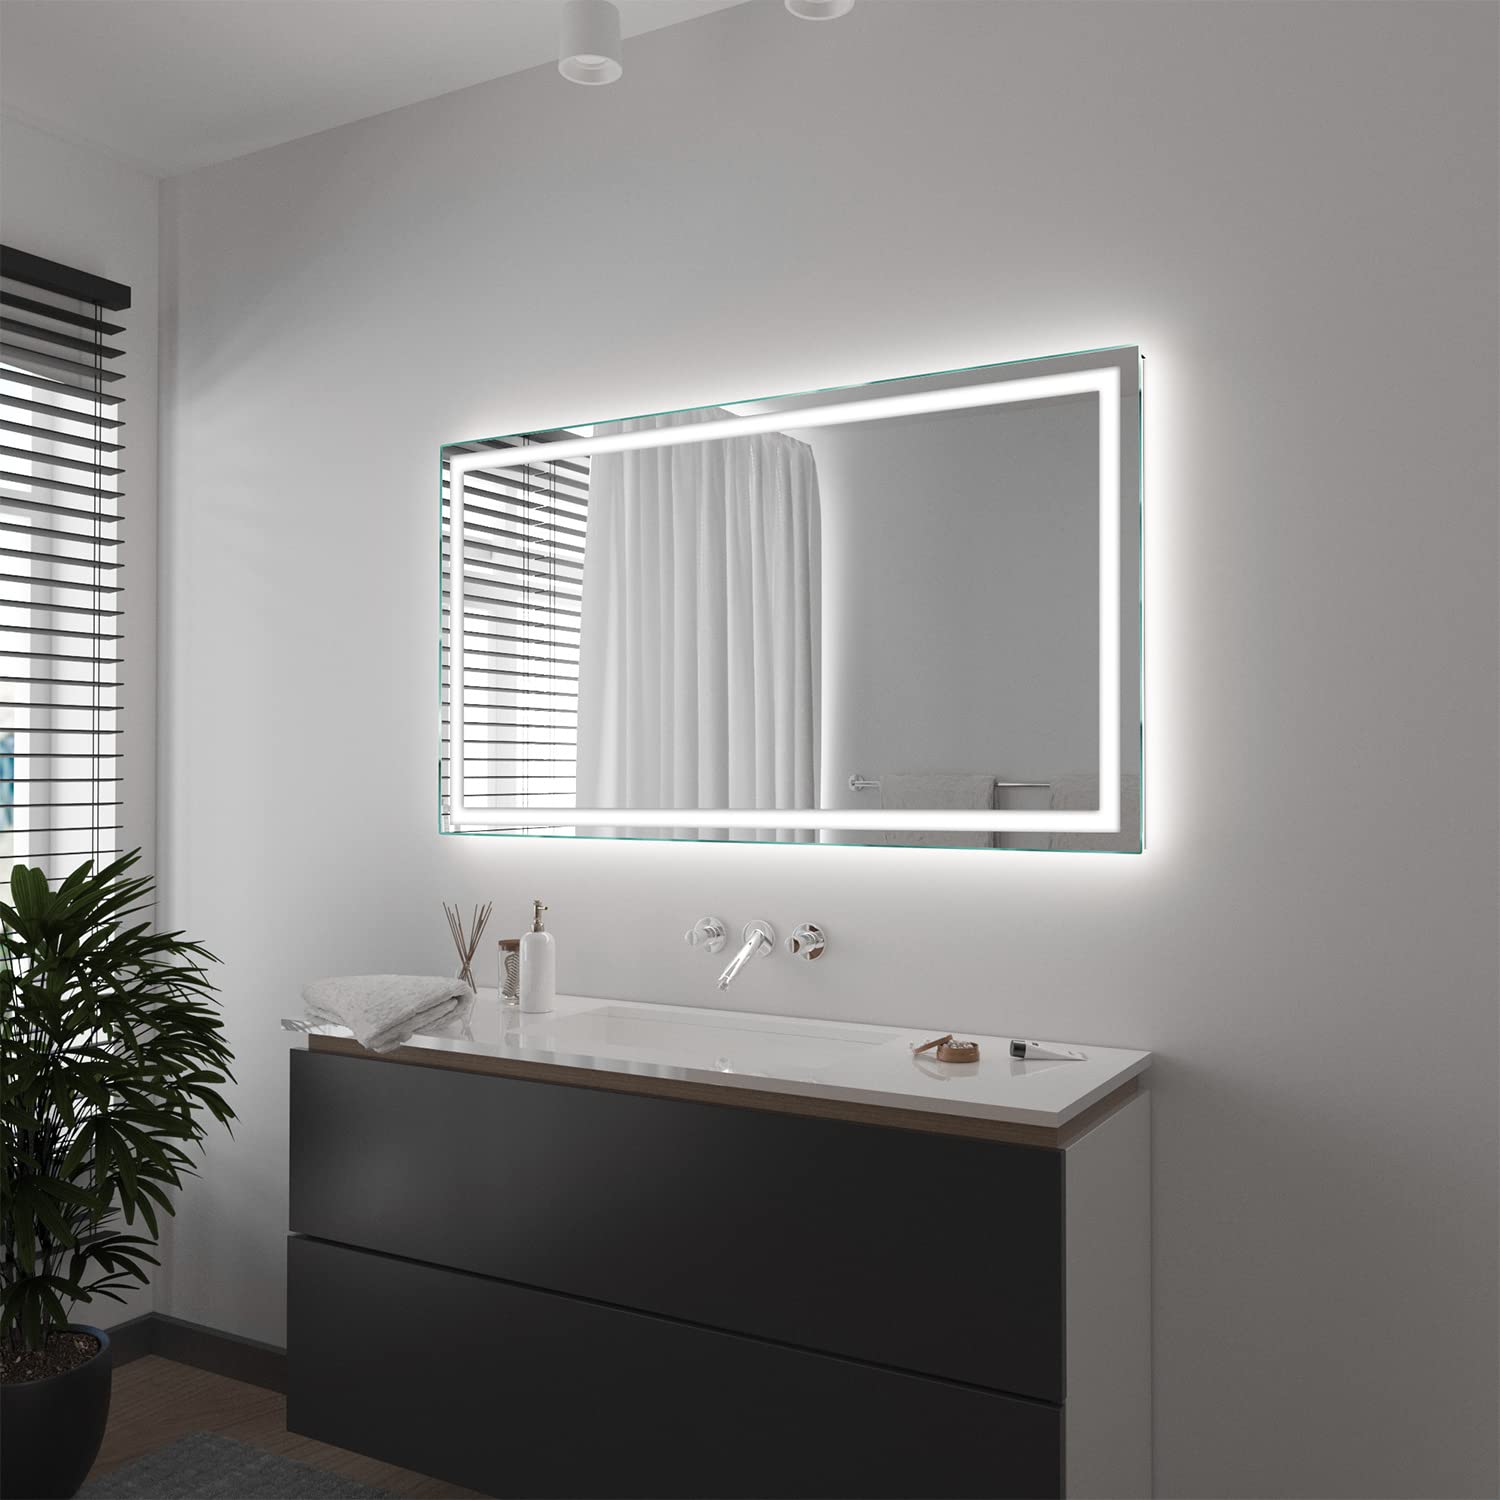 SARAR Wandspiegel mit rundum LED-Beleuchtung 150x100 cm Made in Germany Toulon eckiger Badspiegel Spiegel mit Beleuchtung Badezimmerspiegel